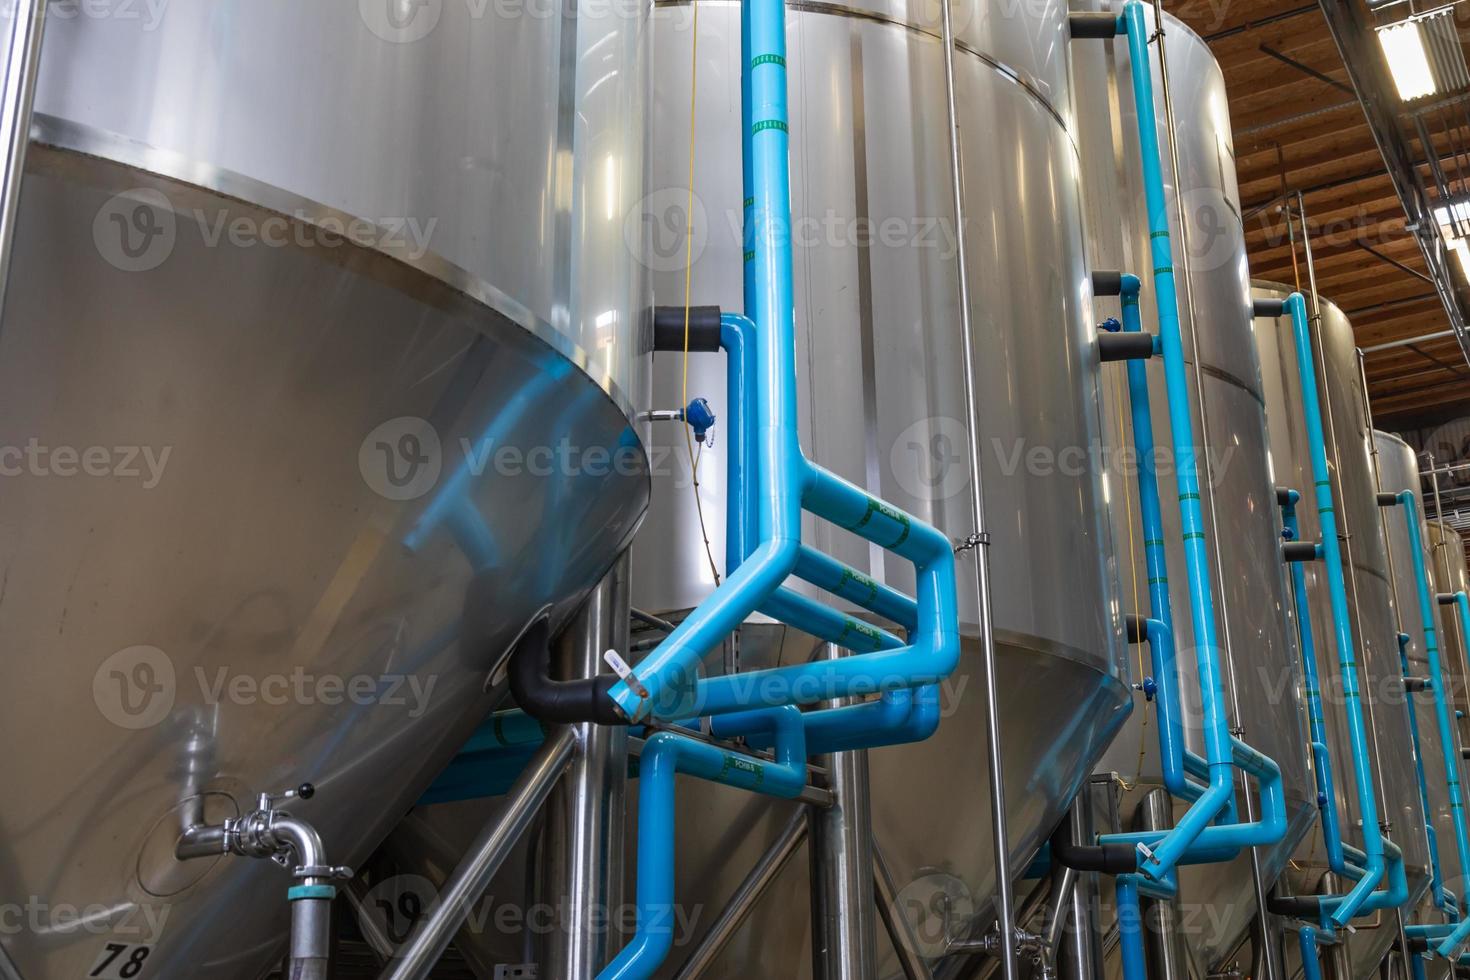 grandes cuves de fermentation de brasserie de bière dans l'entrepôt photo